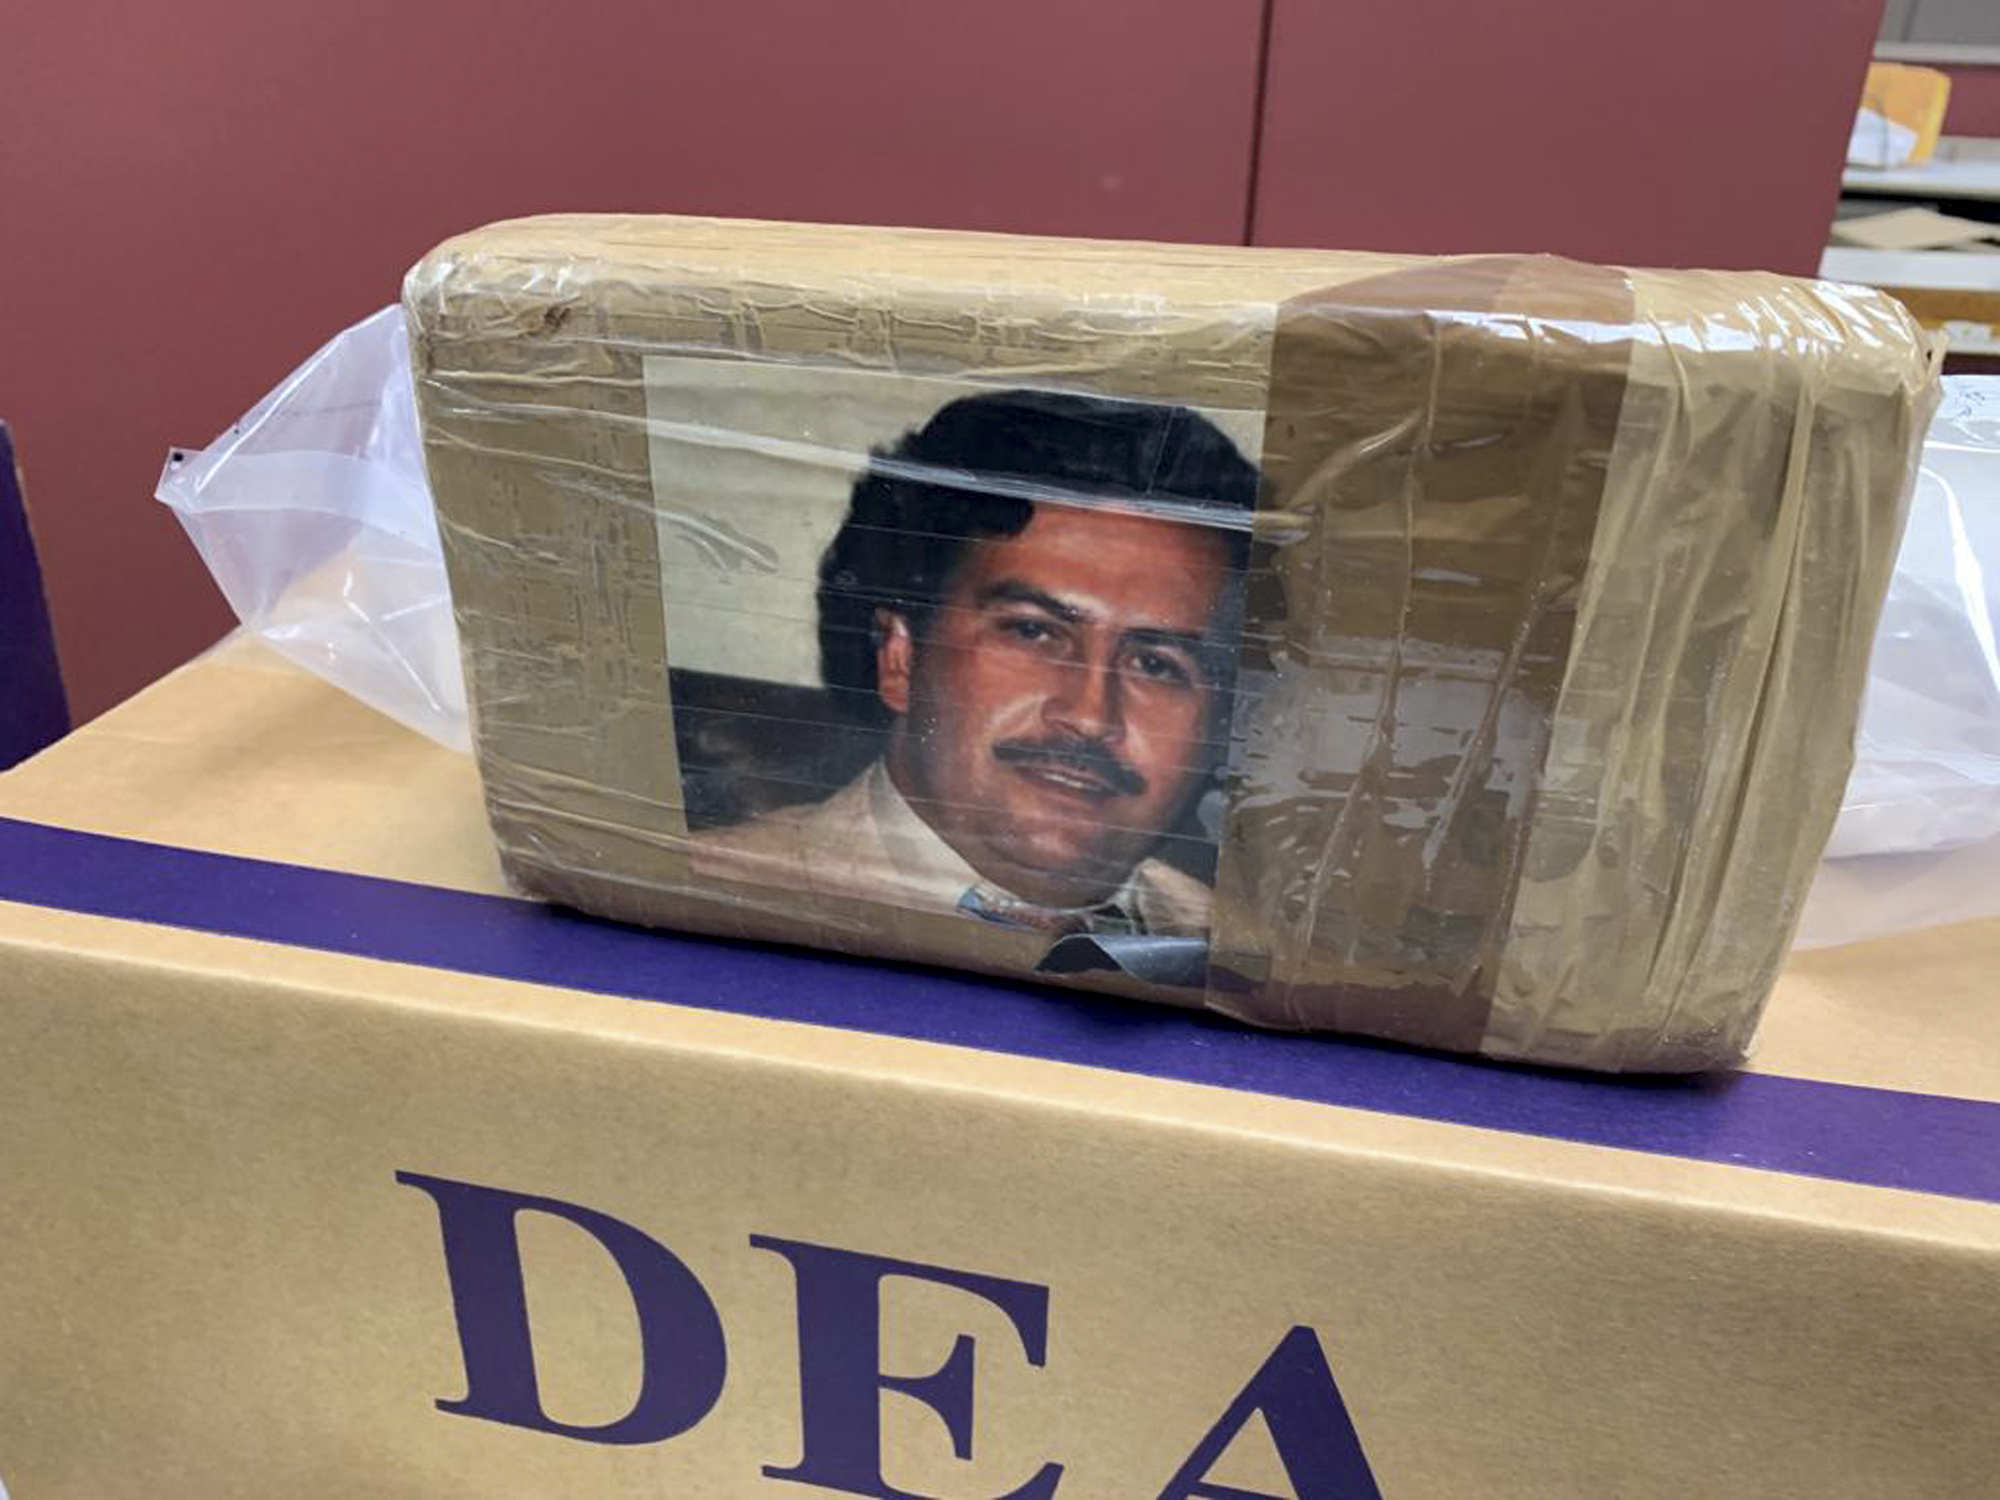 Pablo Escobar fotójával díszítették a heroinos pakkokat a drogcsempészek 